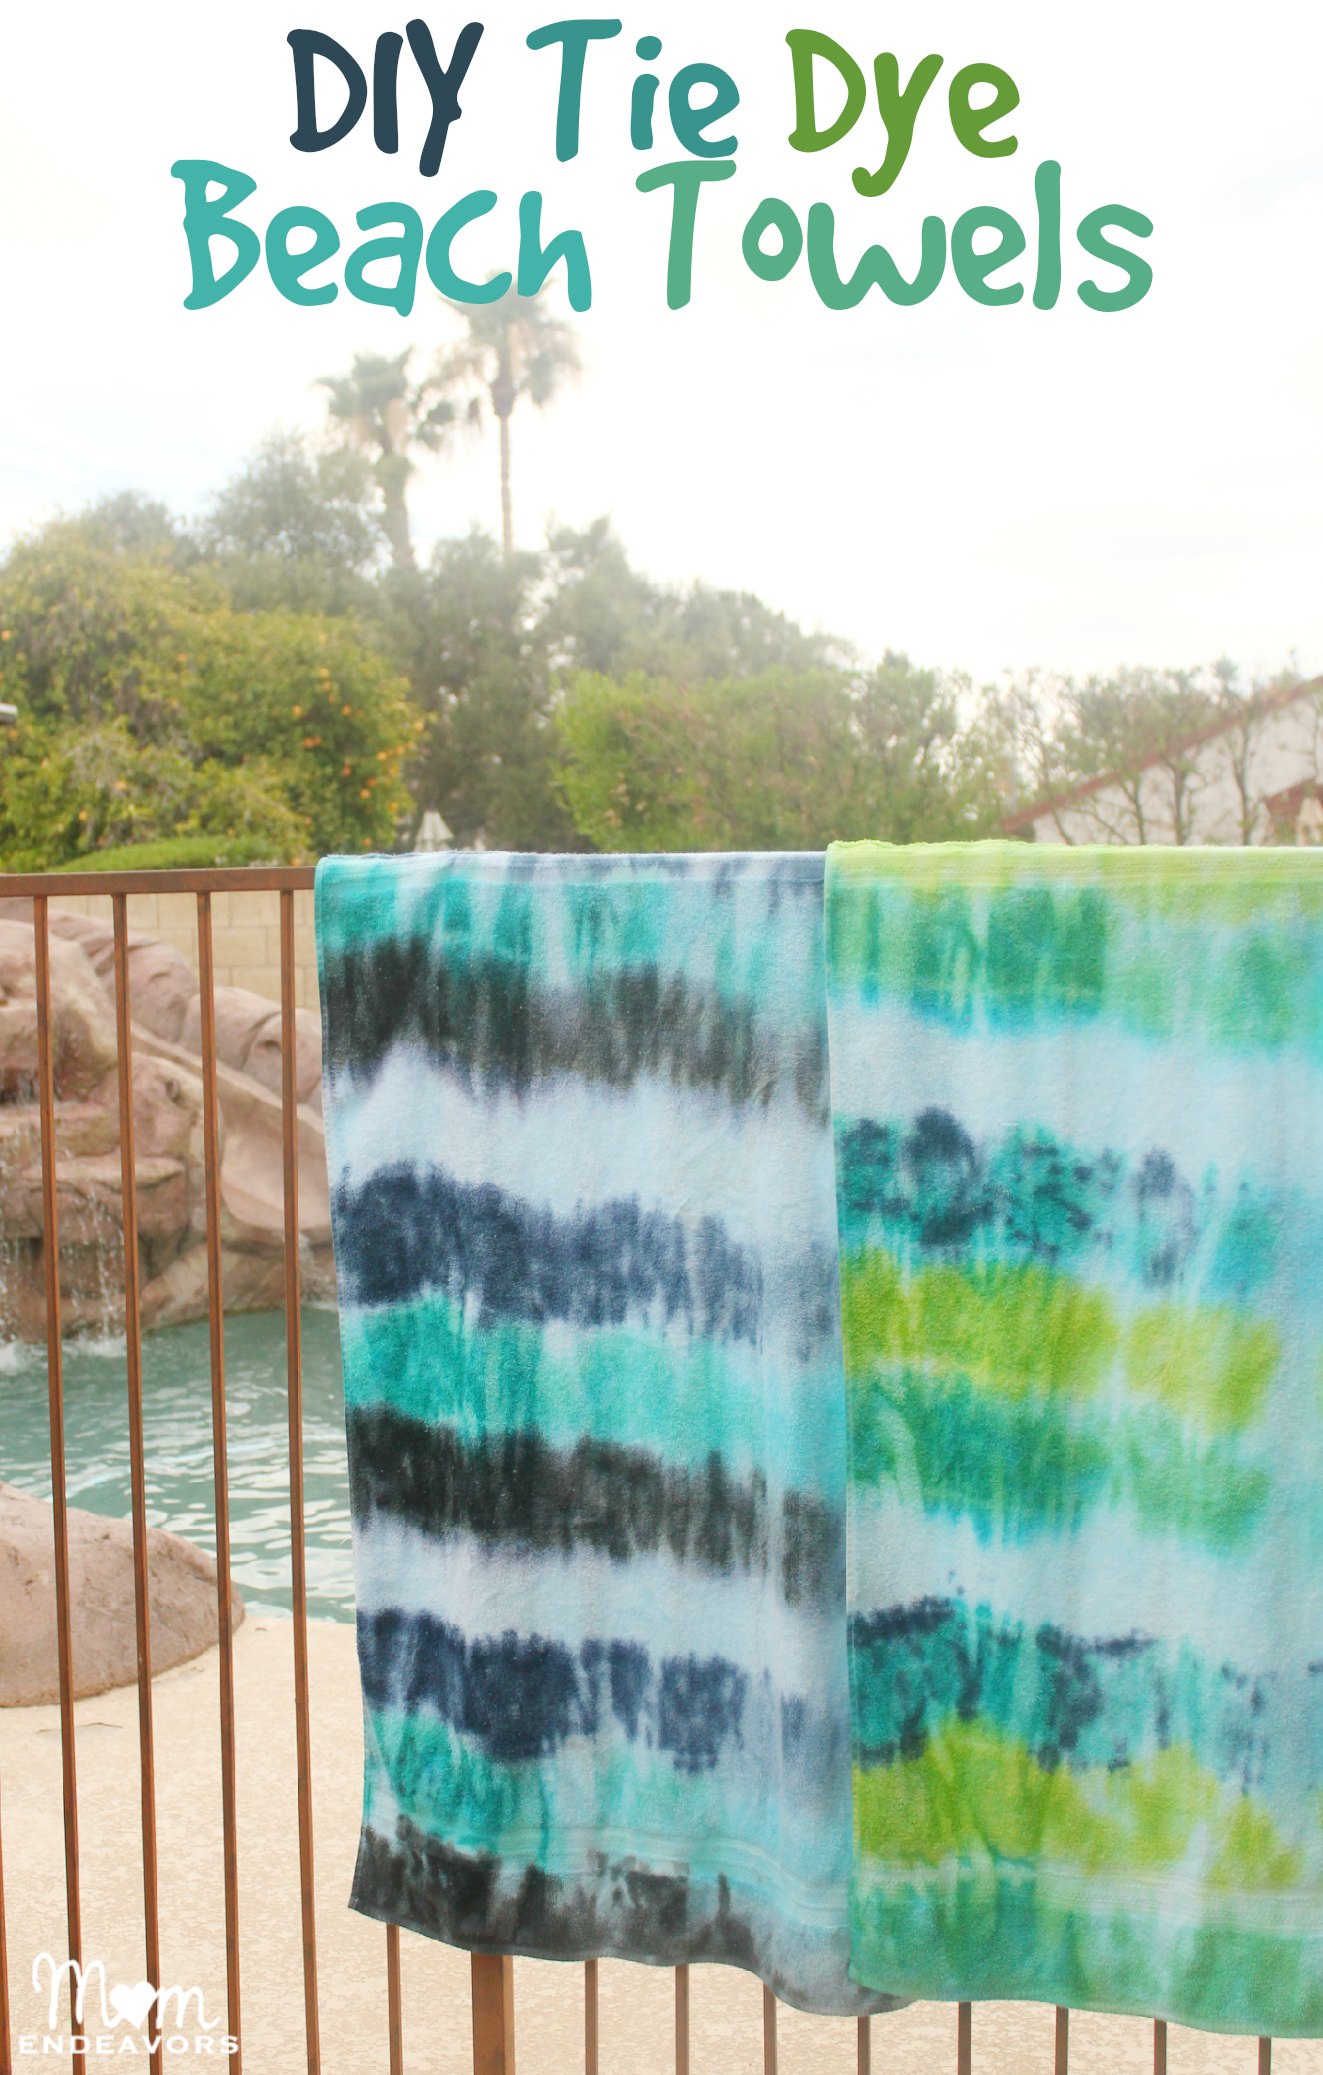 DIY Tie Dye Beach Towels